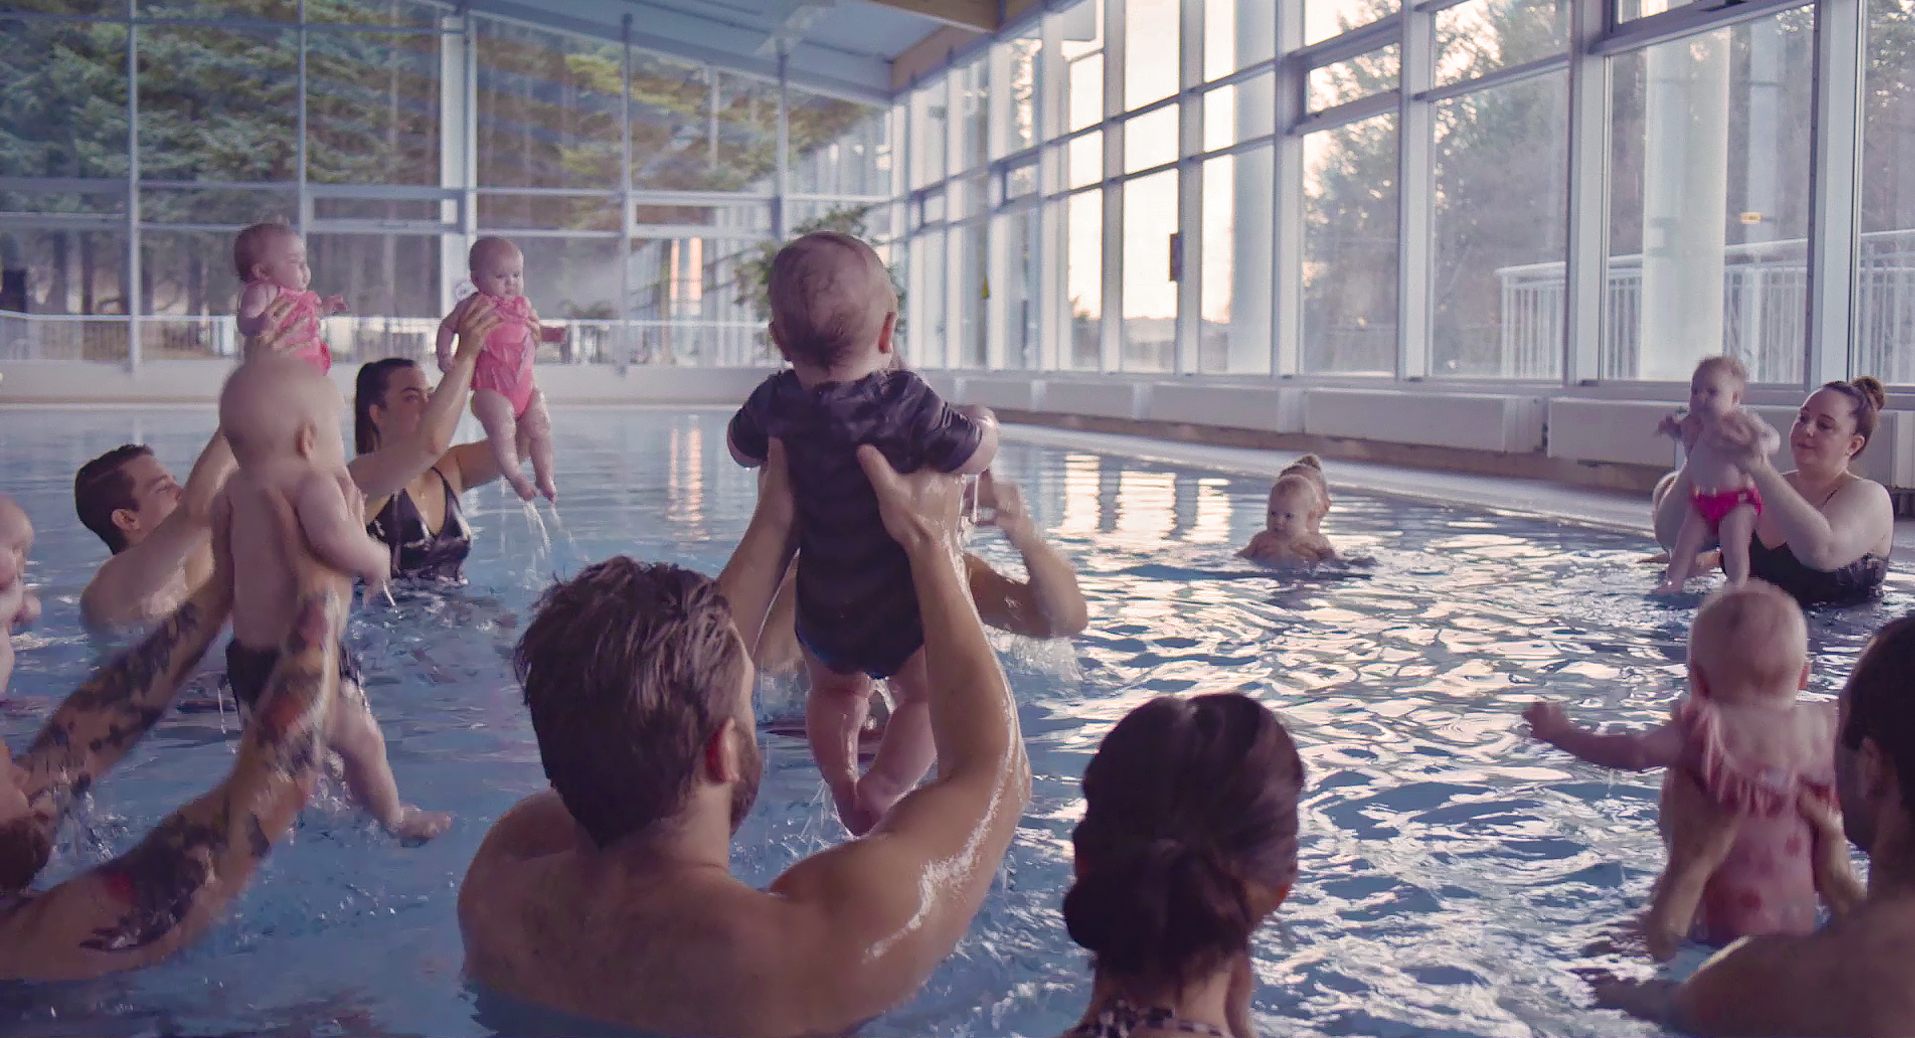 Echo: Auf dem Bild sind Menschen in einem Hallenbad zu sehen, die Babys in ihren Händen halten und diese nach oben aus dem Wasser heben